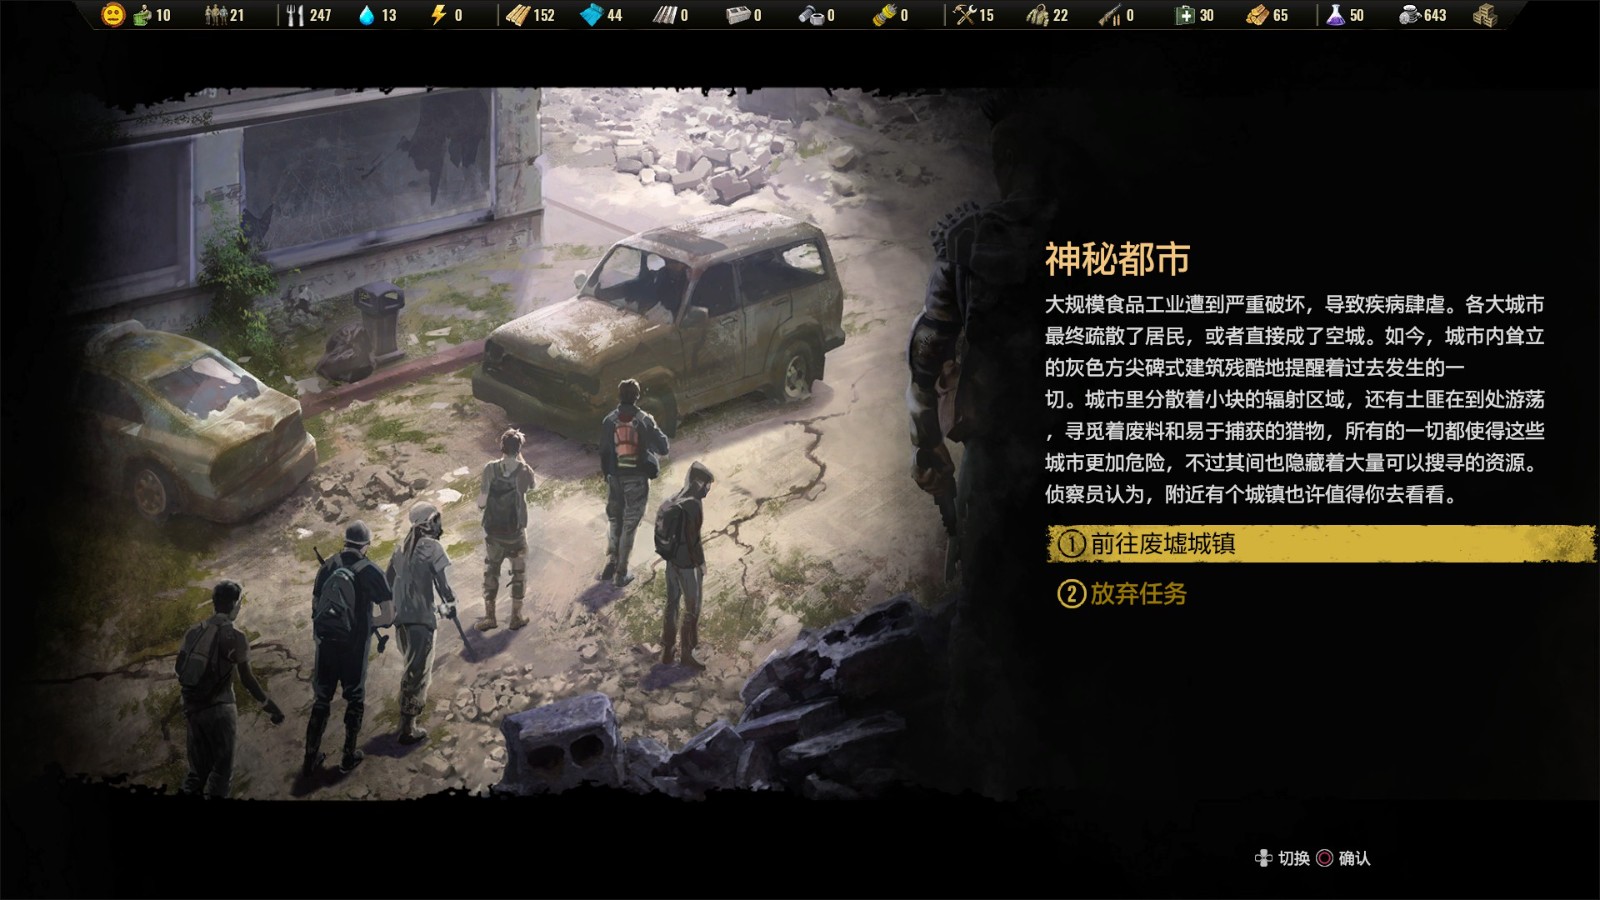 终极生存模拟游戏《末日求生》公开聚居地内会发生的各种任务与事件